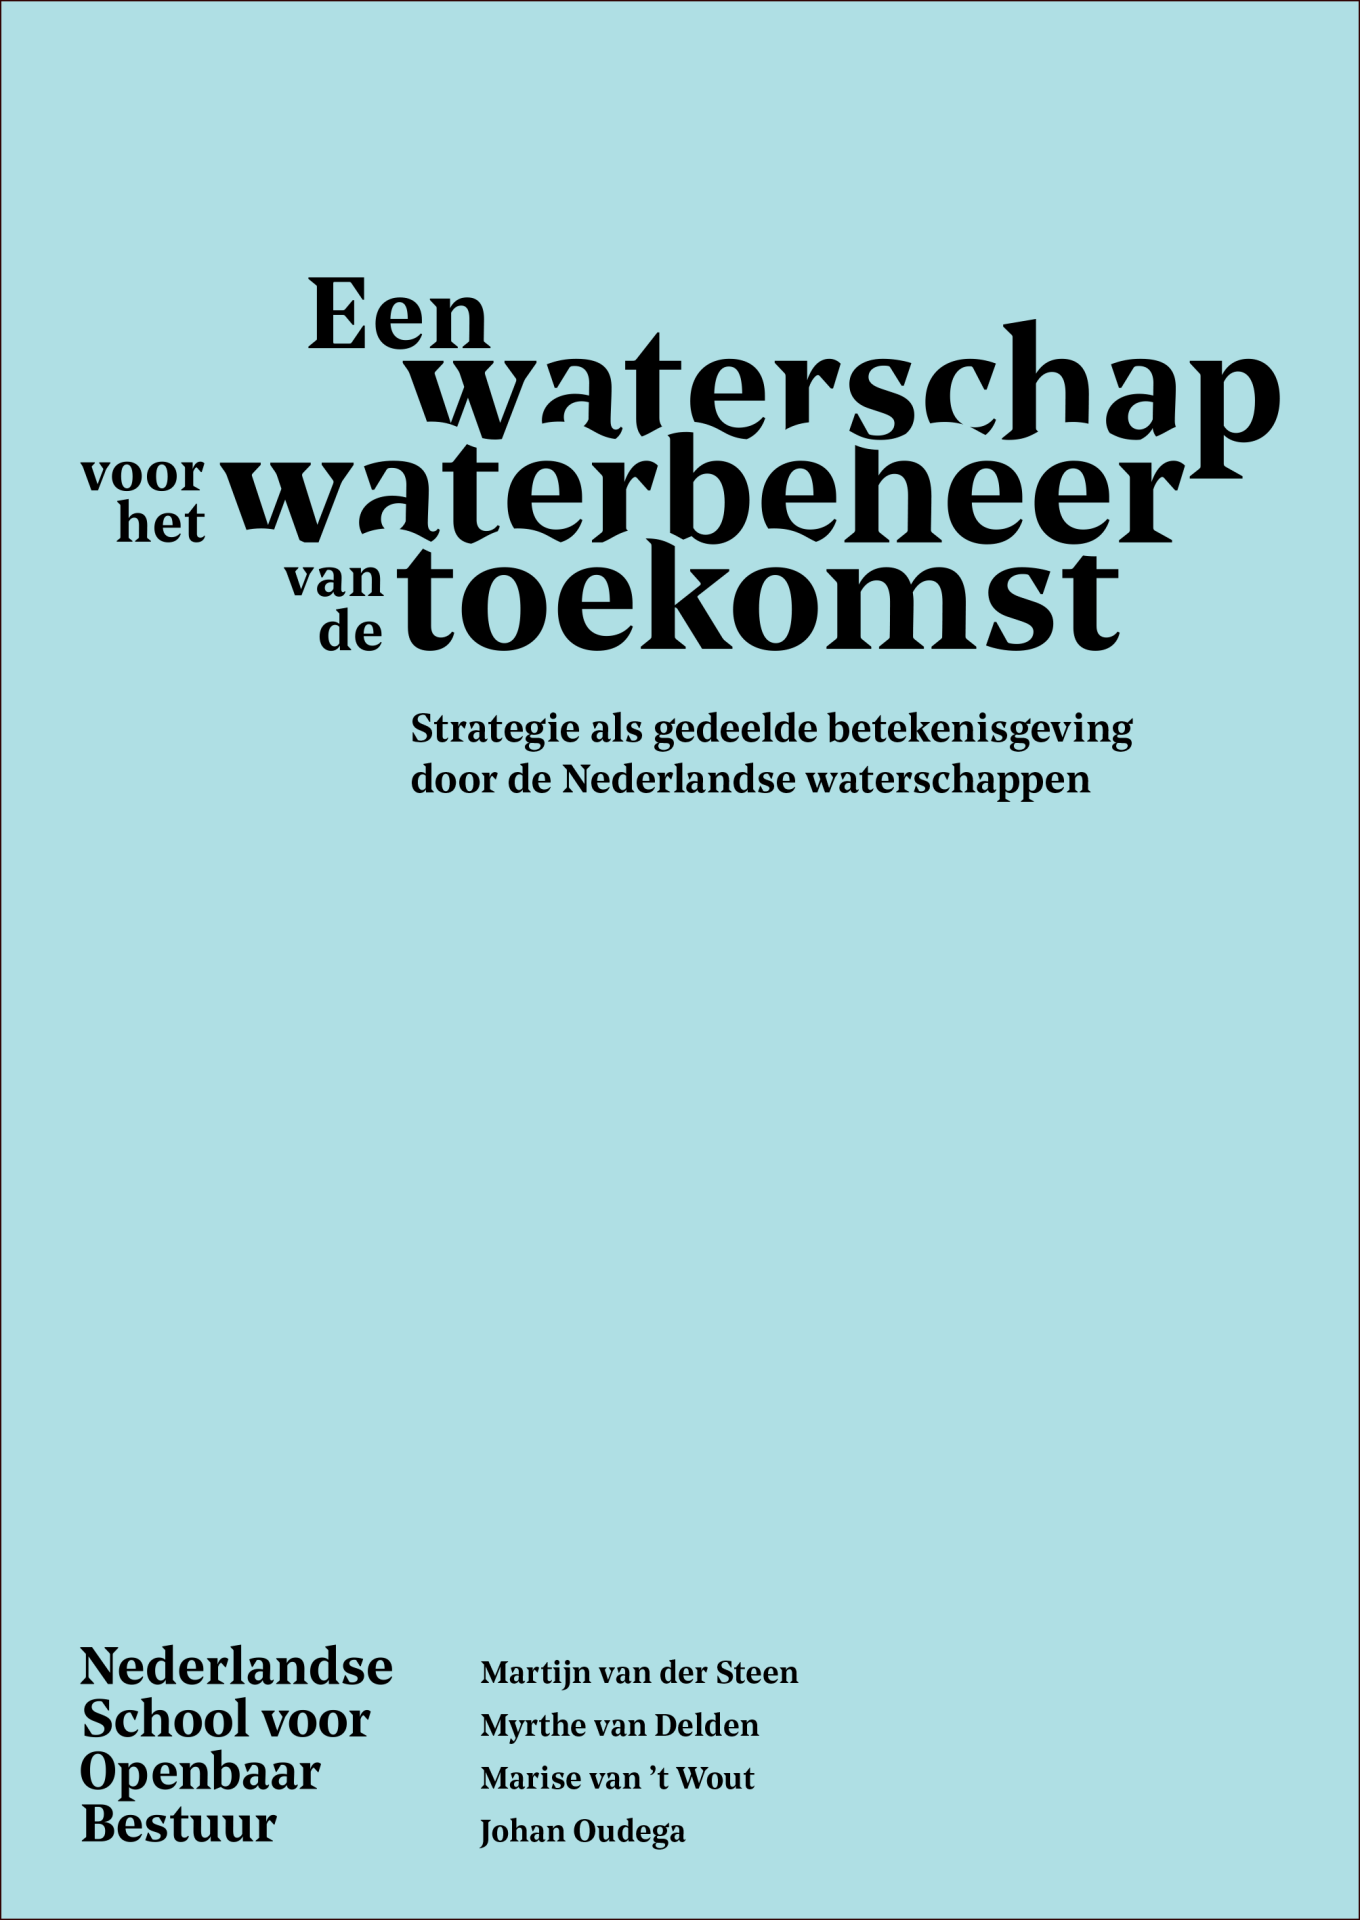 Essay Een waterschap voor het waterbeheer van de toekomst